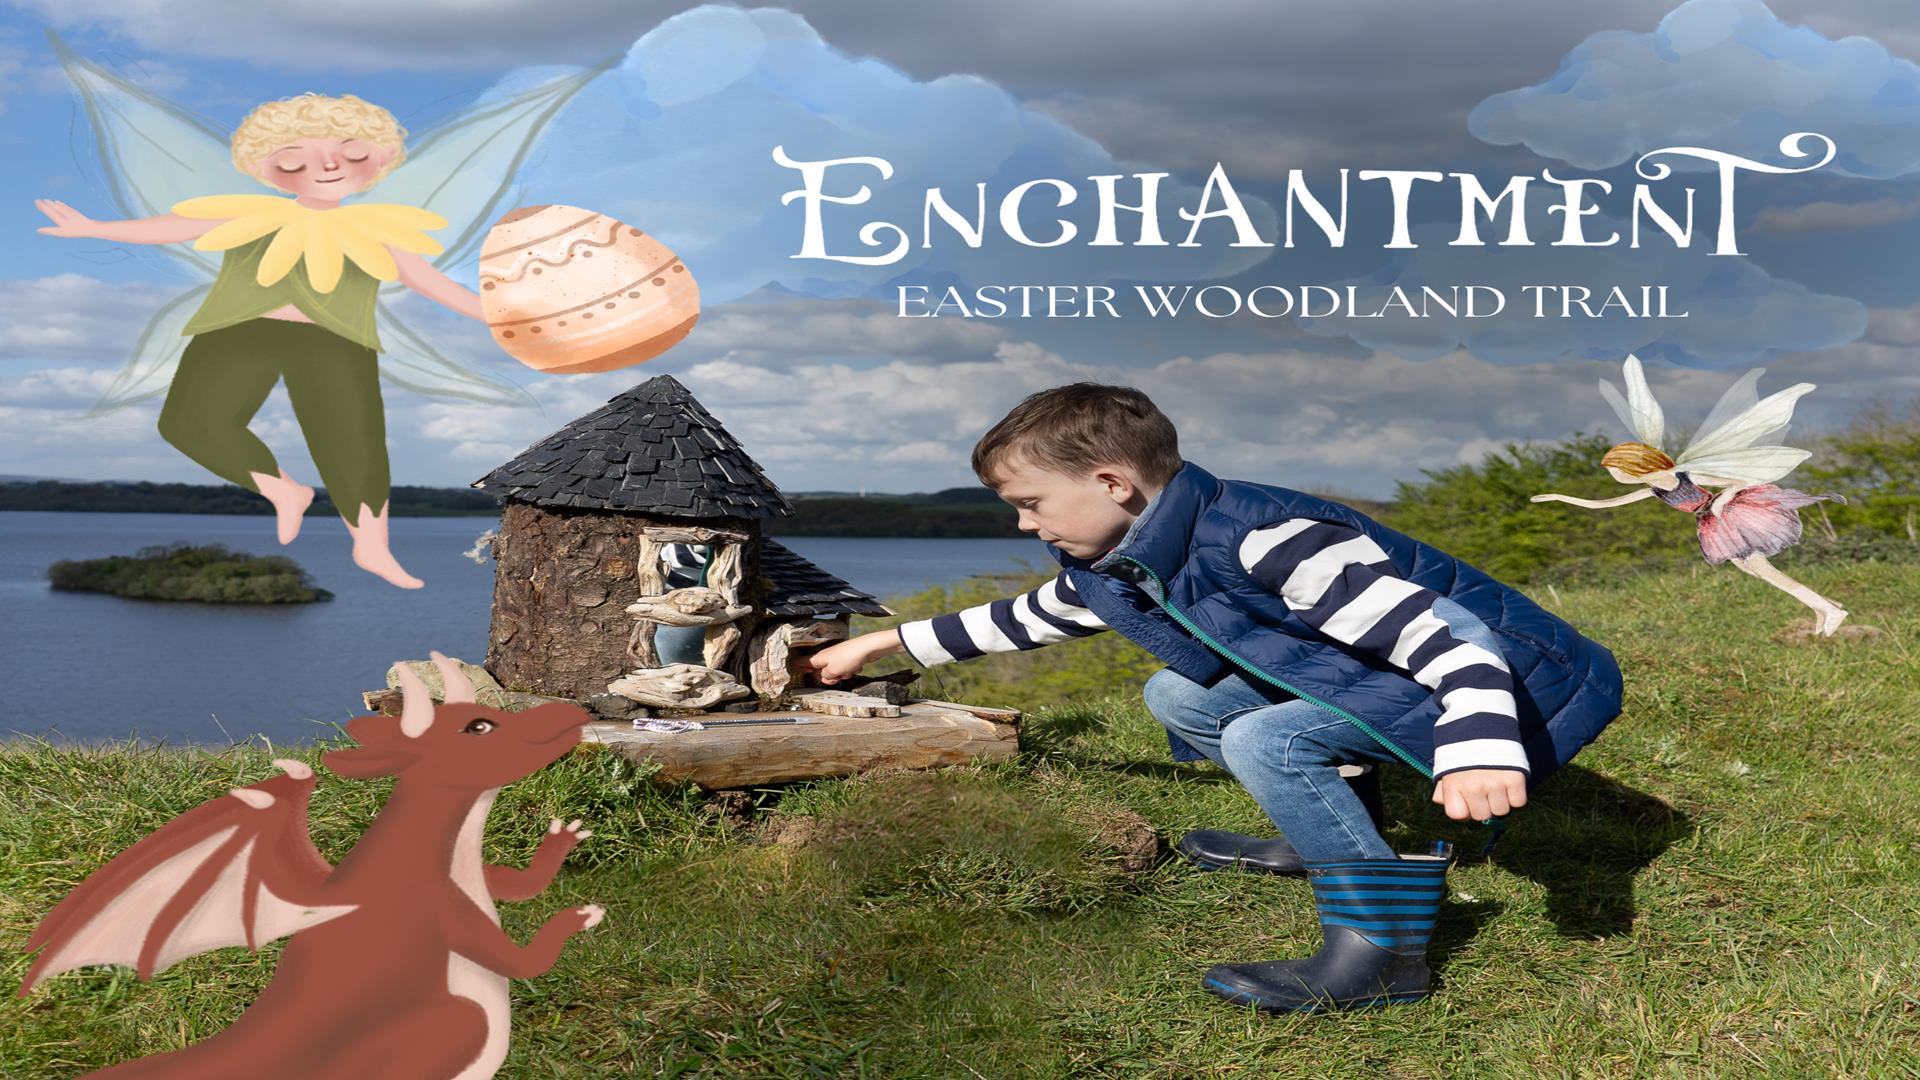 Easter Enchantment at Lough Erne Resort